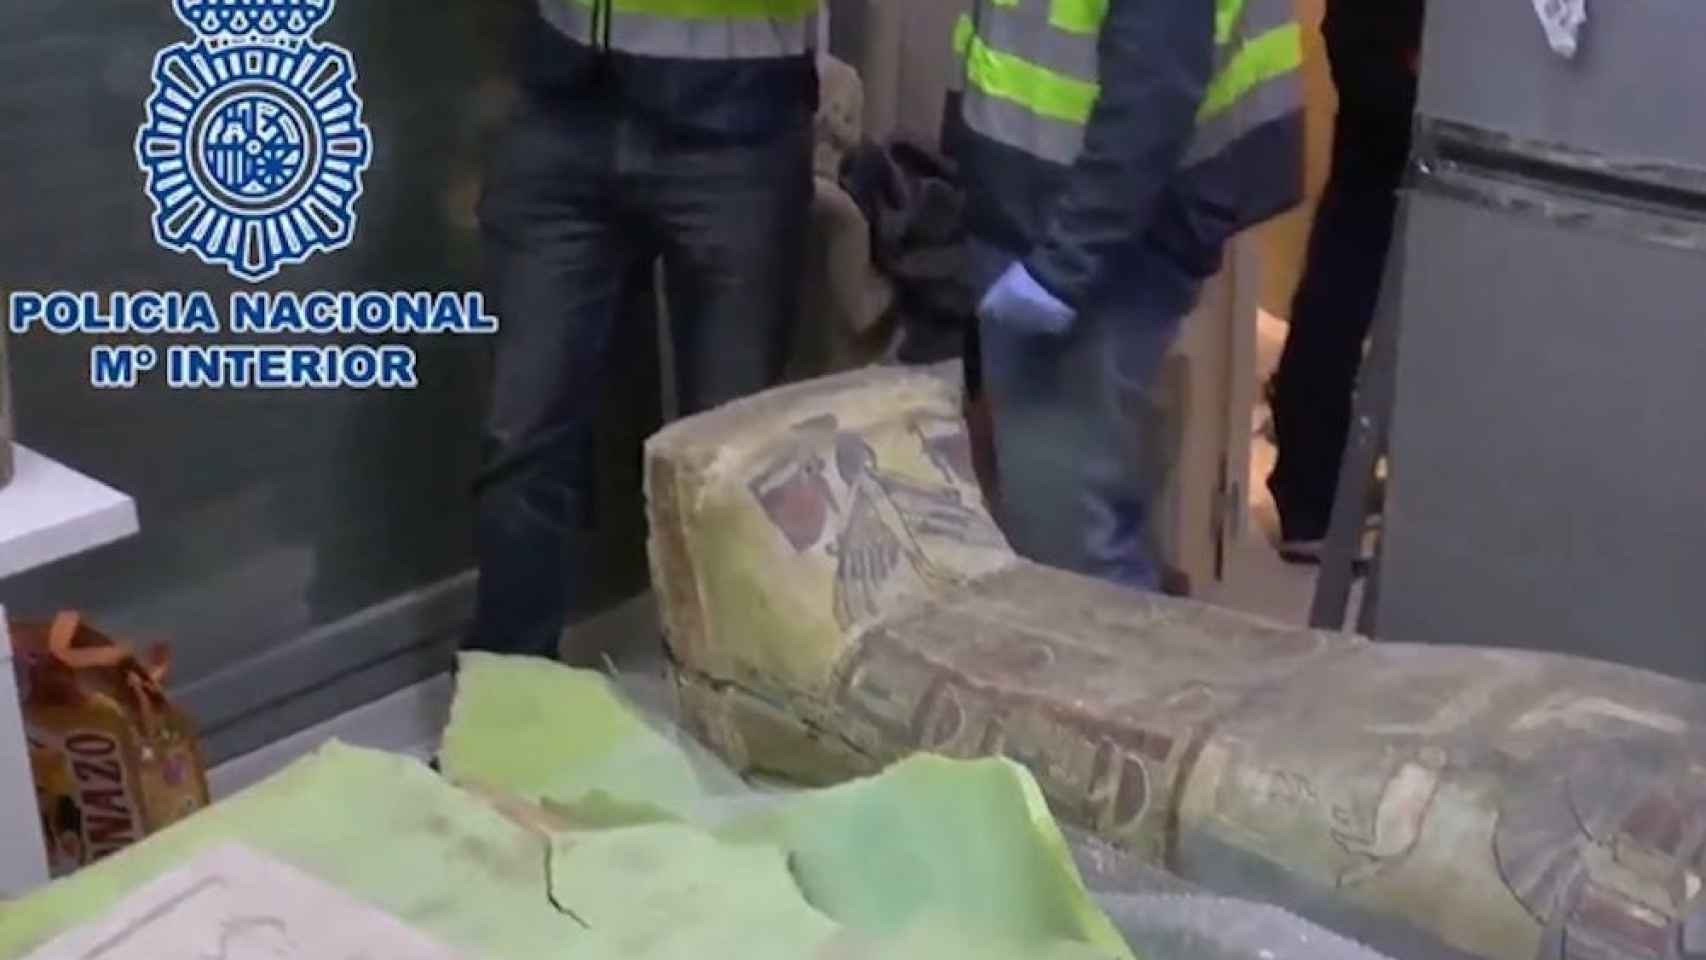 La operación policial que ha desarticulado a una banda de contrabando de obras de arte / Policía Nacional